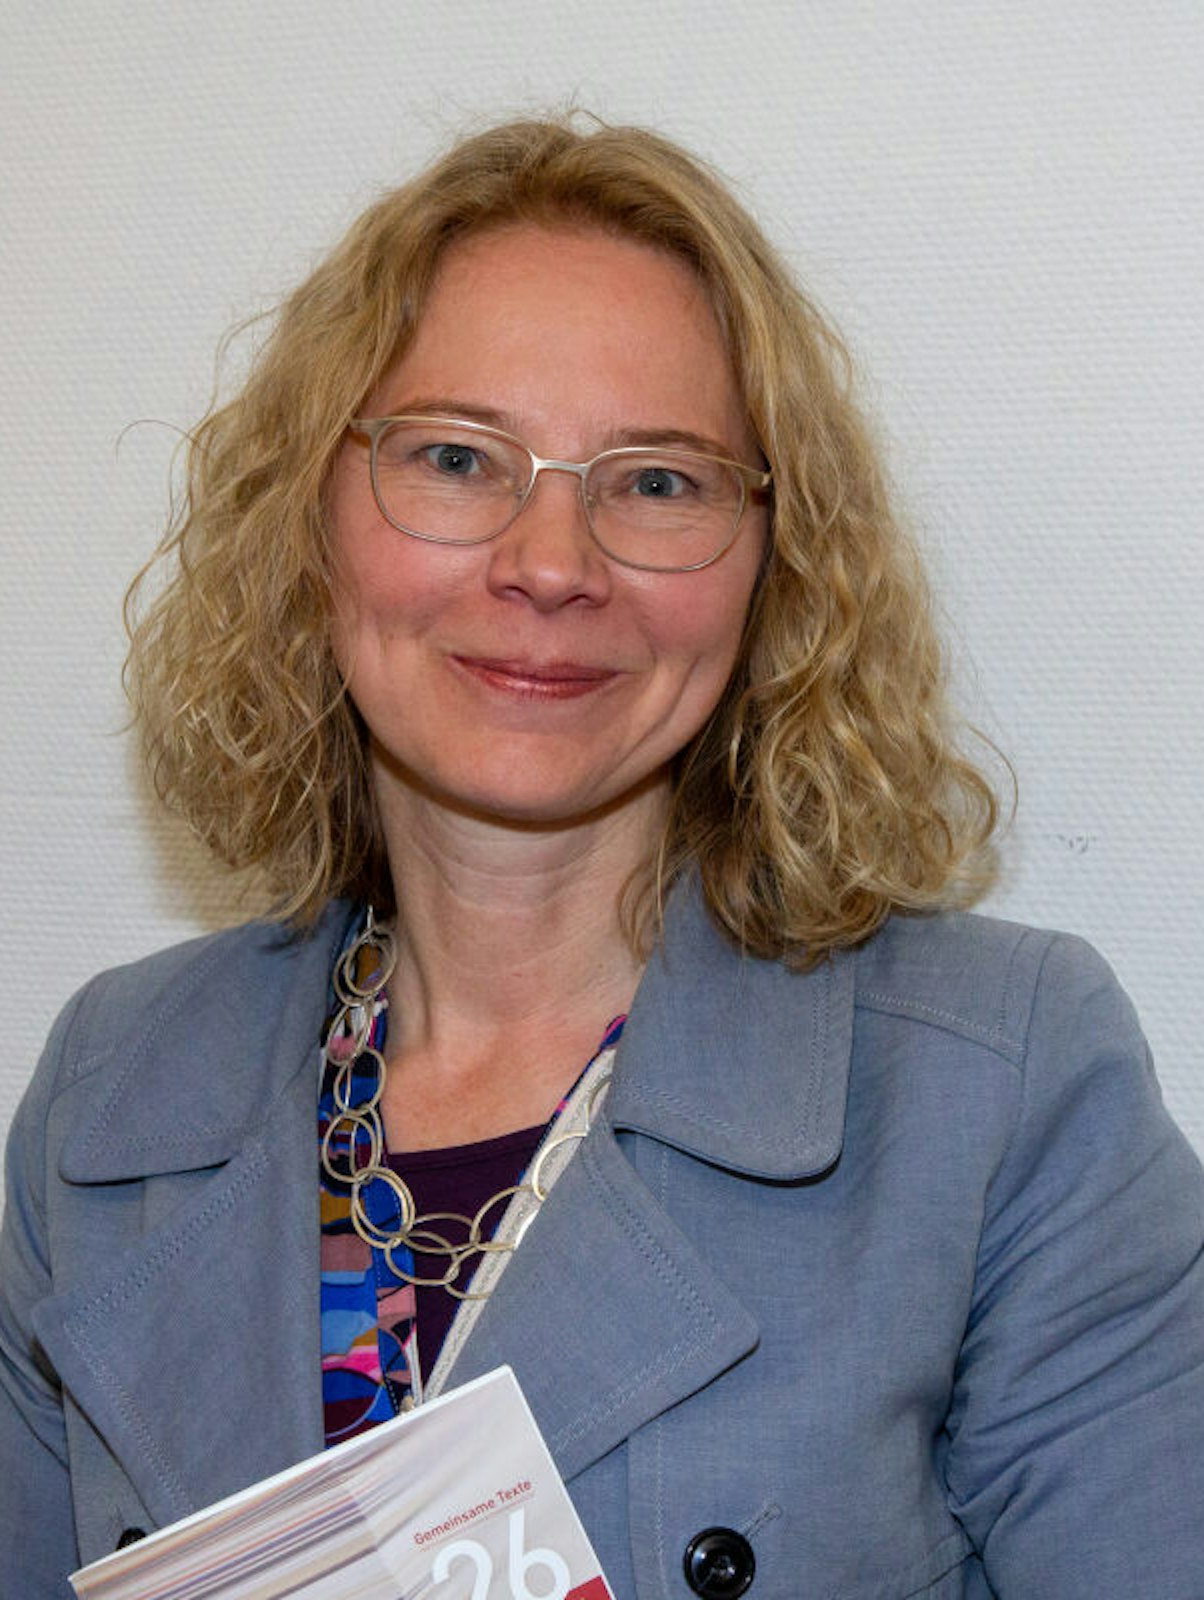 Tine Stein ist Inhaberin des Lehrstuhls für Politische Theorie und Ideengeschichte an der Georg-August-Universität Göttingen